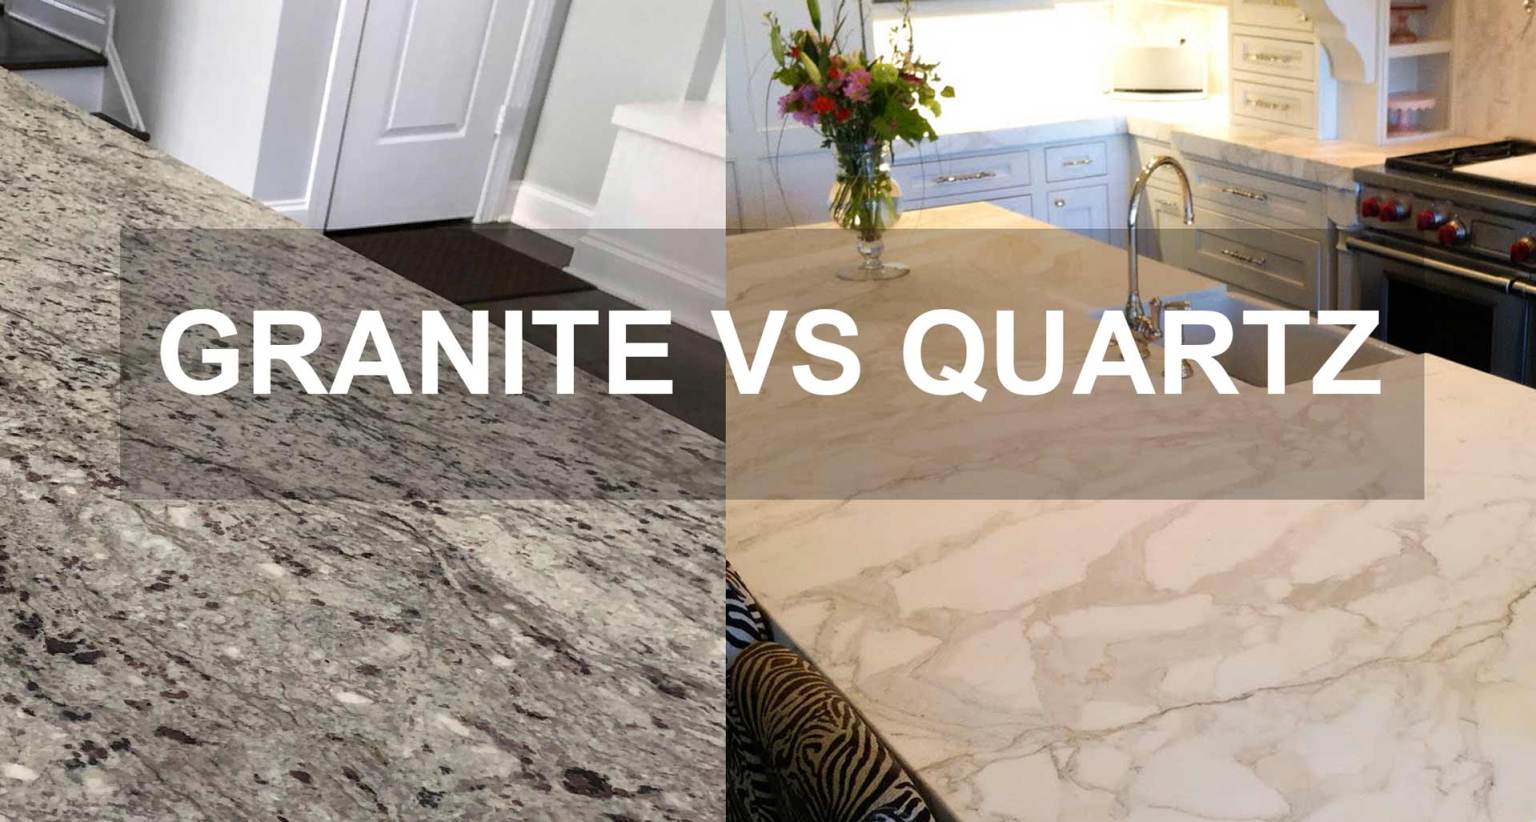 Granite vs Quartz Countertops untuk dapur dan kamar mandi